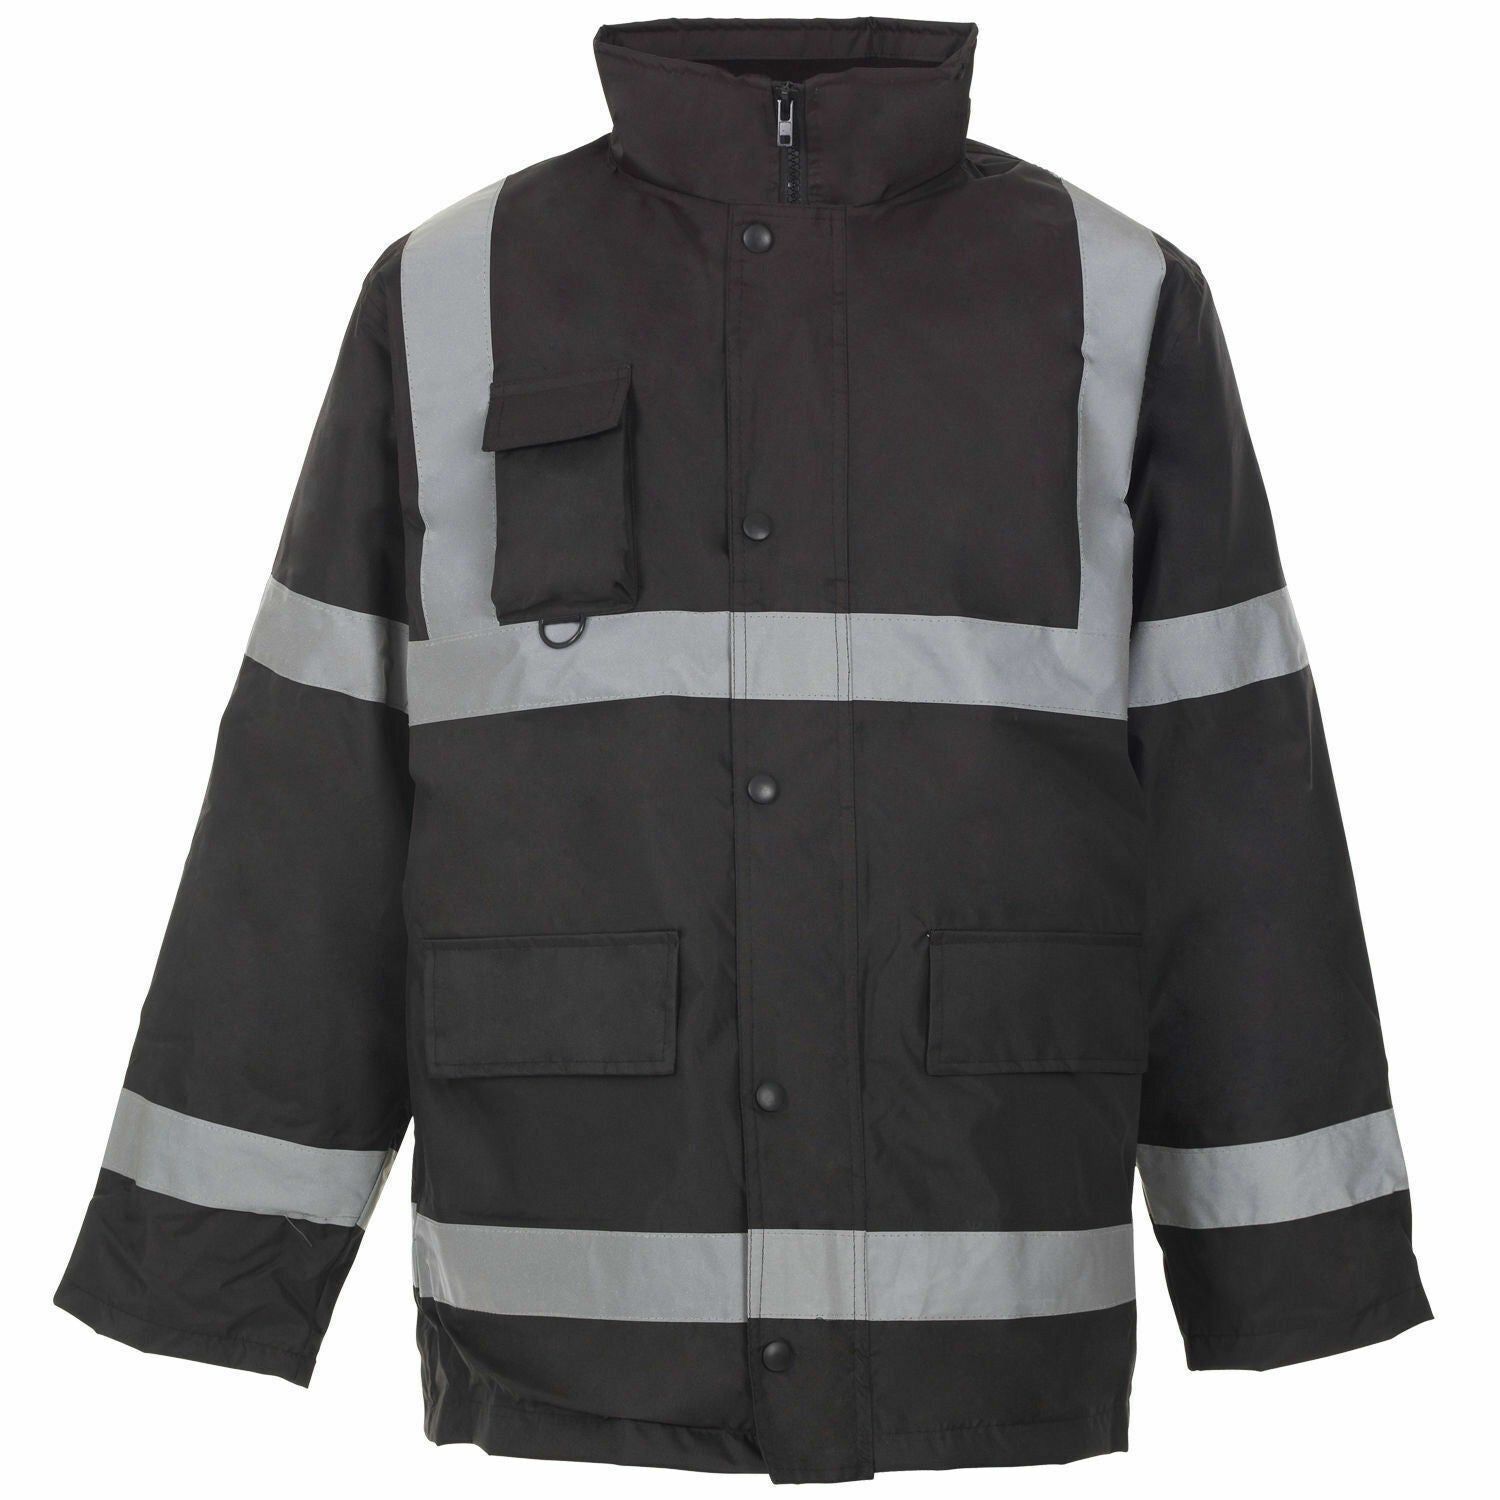 HI Viz Waterproof Parker Jacket Visibility Safety Work Hi Vis Jacket Coat